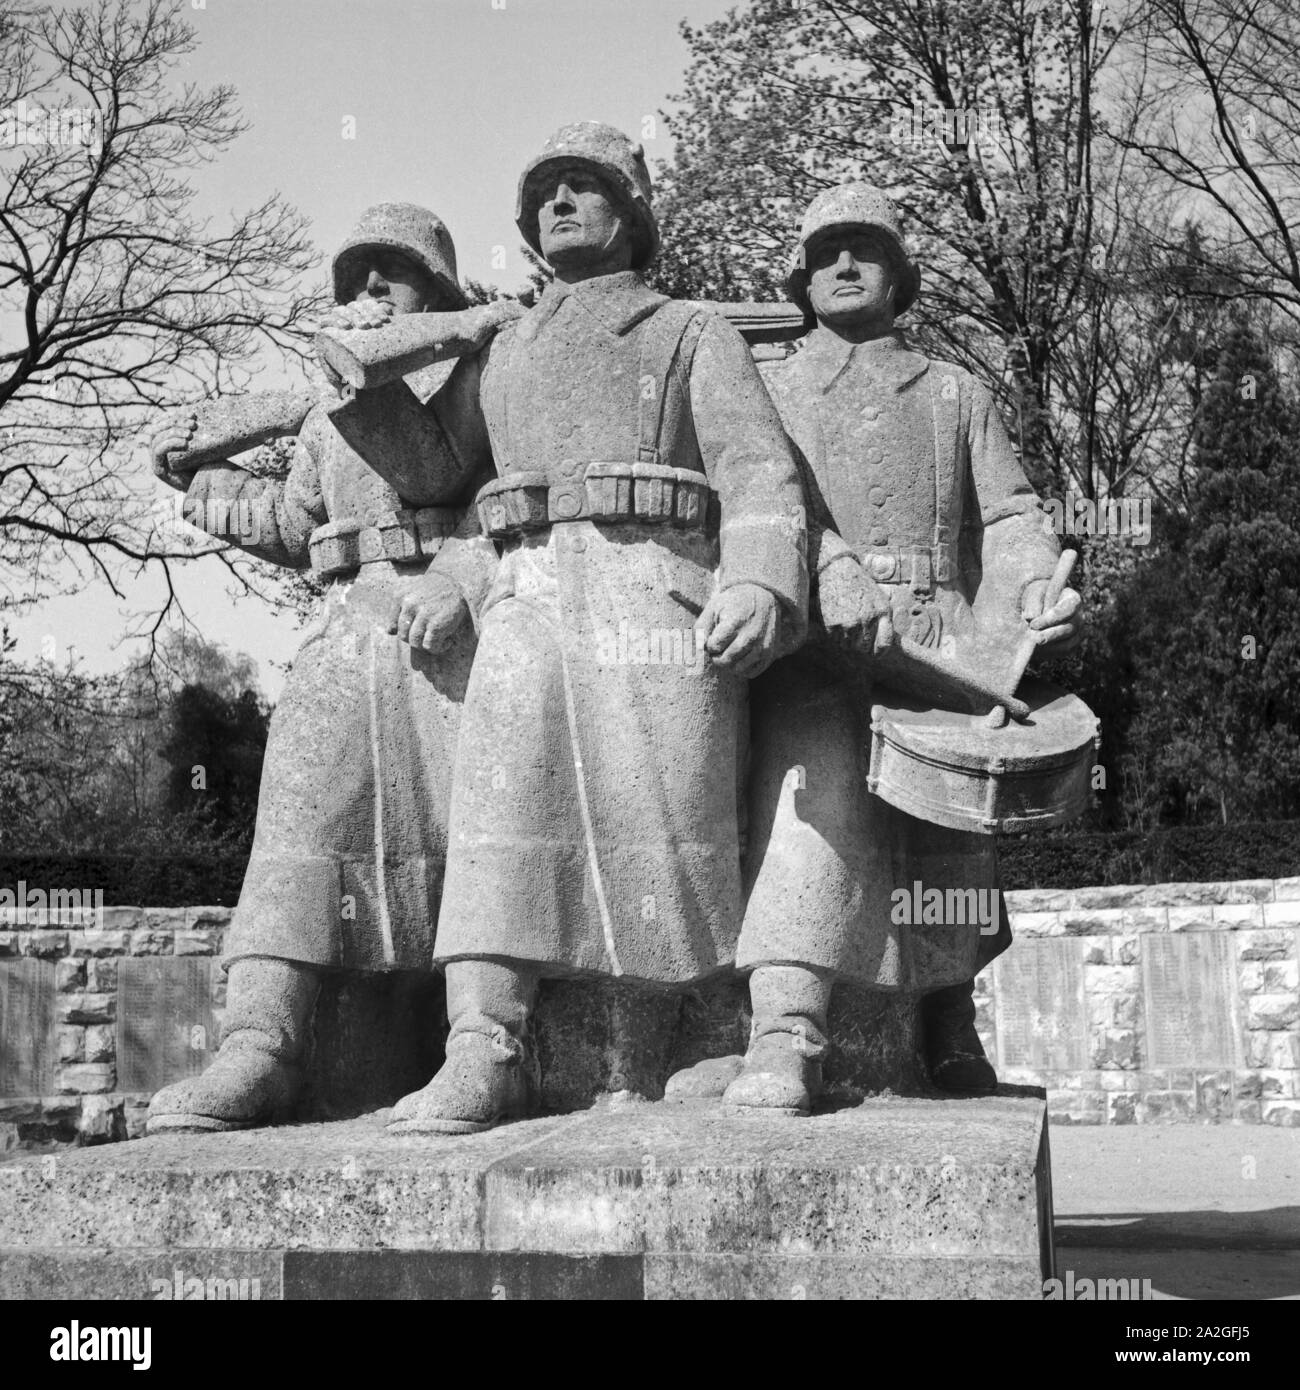 Ehrenmal für die Gefallenen des 1. Weltkriegs in Frankfurt am Main, Deutschland 1930er Jahre. Memorial for the fallen soldiers of WWI at Frankfurt, Germany 1930s. Stock Photo